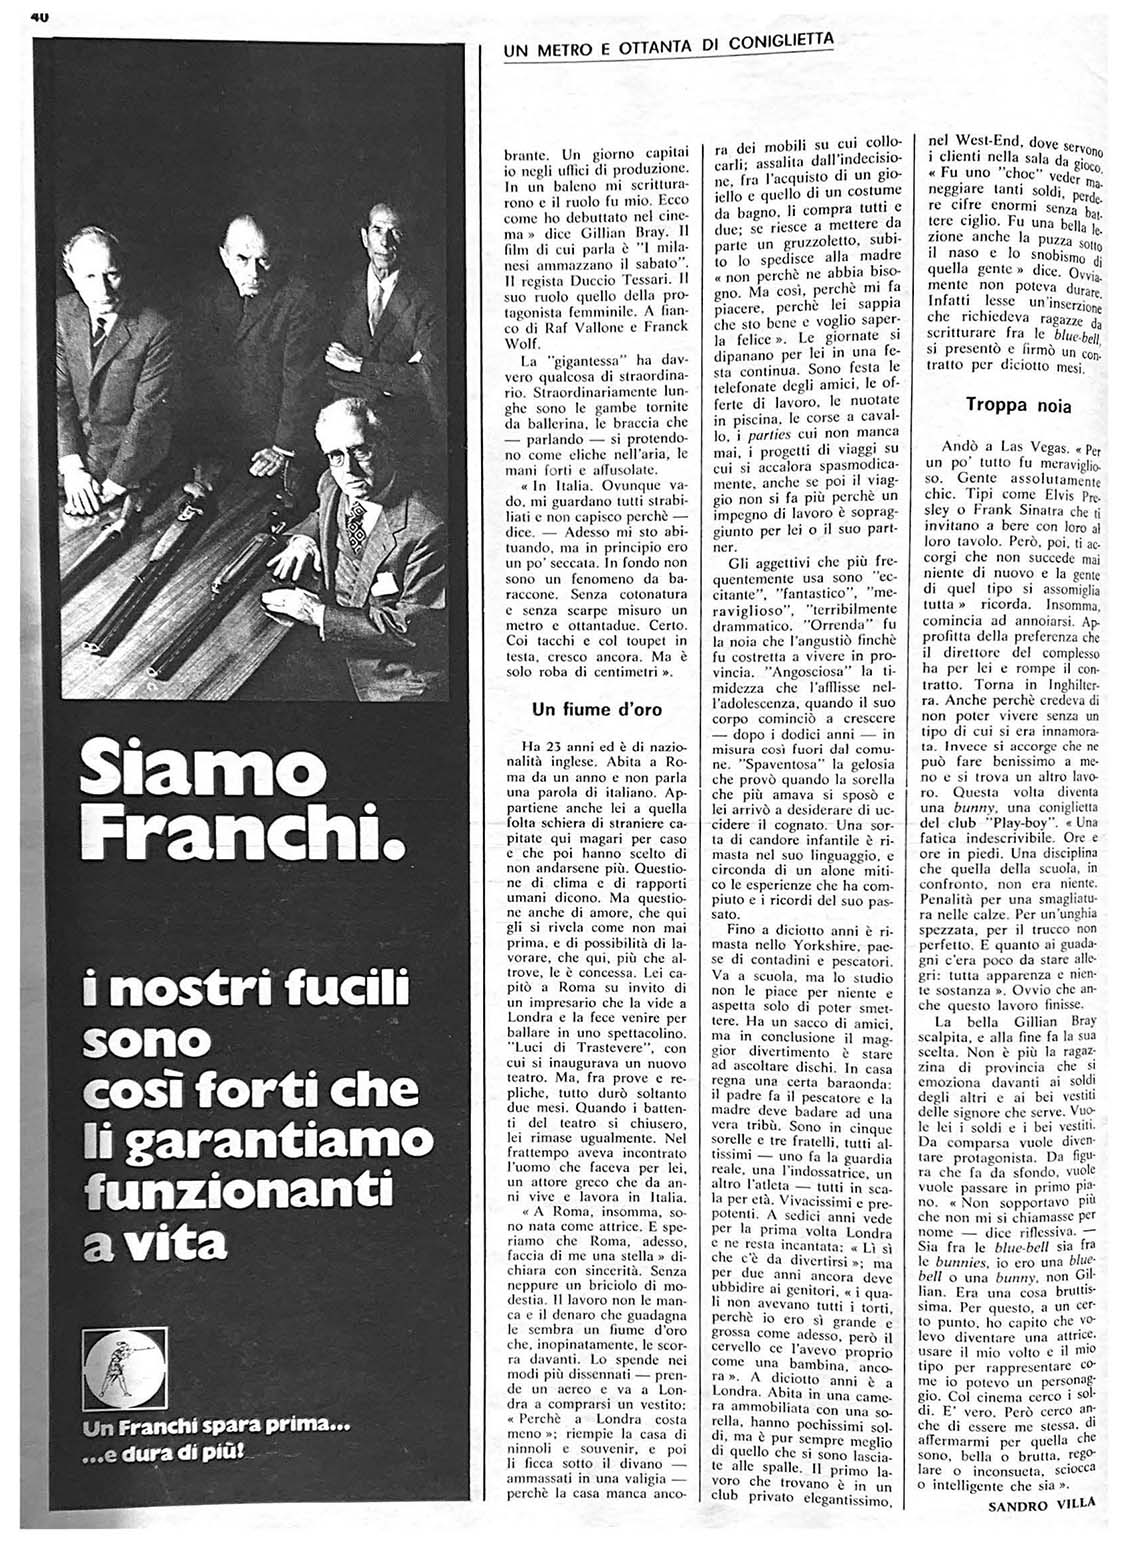 Tempo (Y. XXXII n. 35, August 1970) 3.jpg